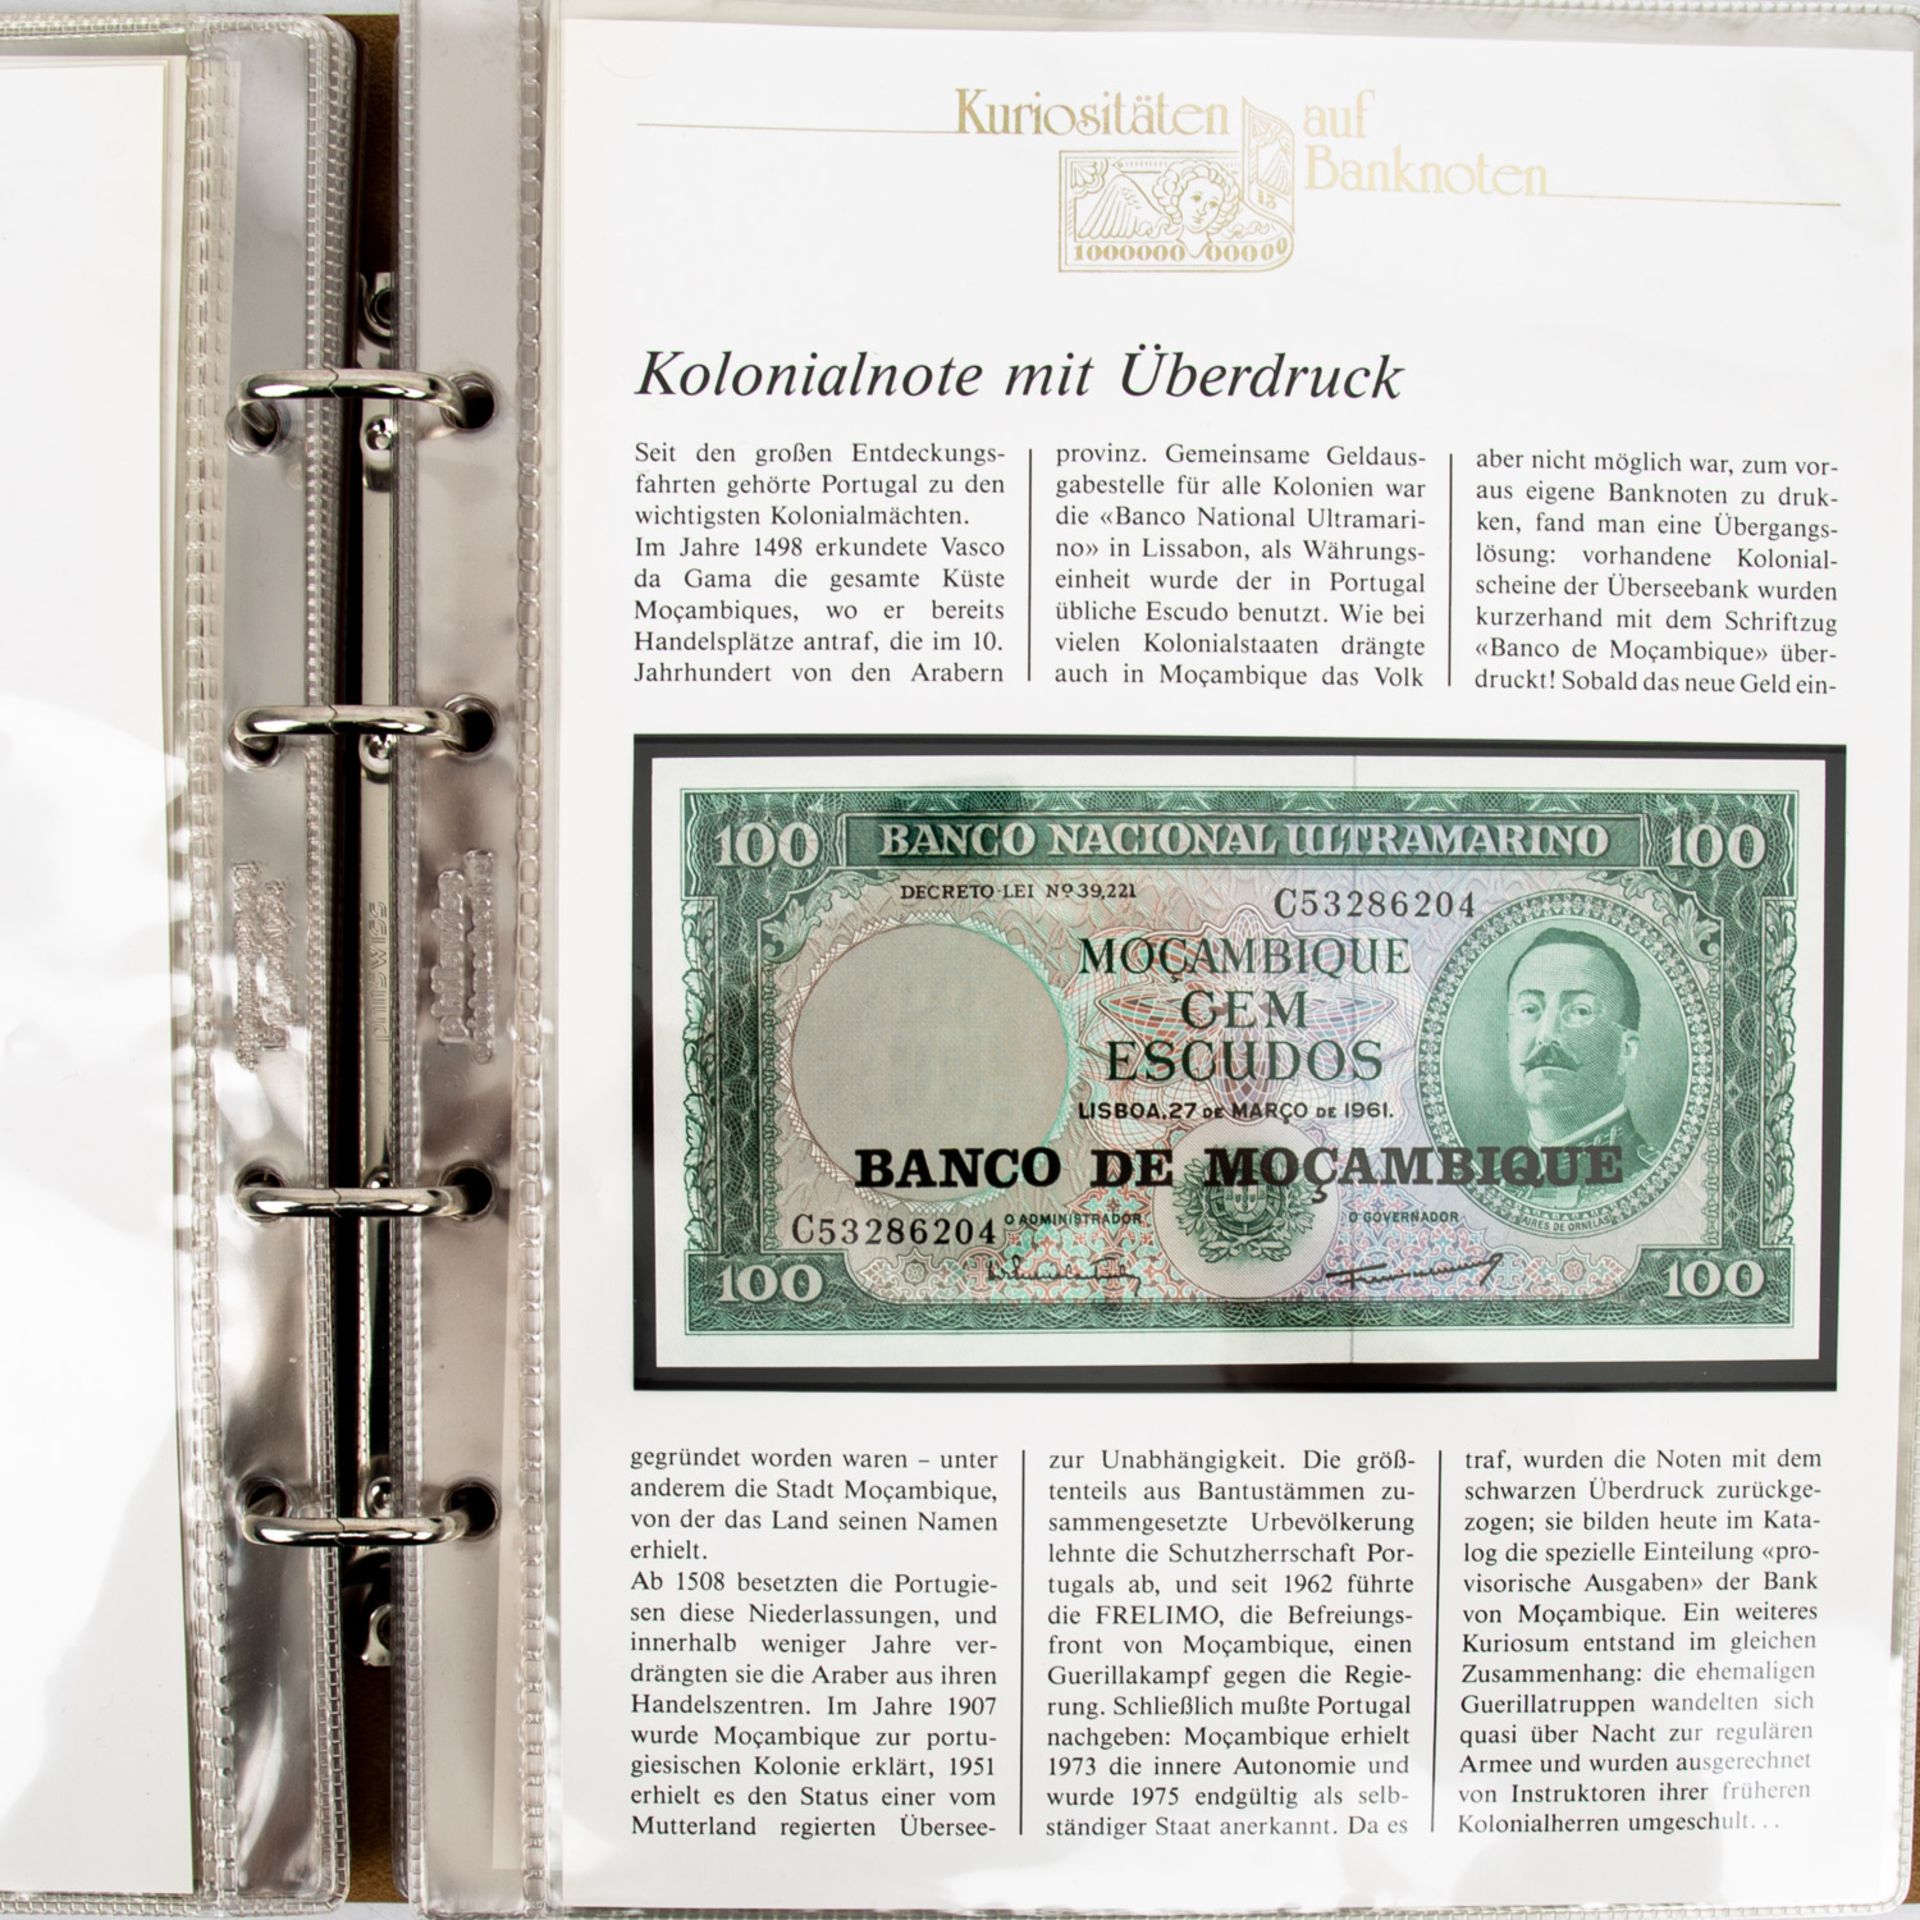 "Kuriositäten auf Banknoten" -2 Sammelalben mit Banknoten und Proben, u.a. aus Argent - Image 3 of 6